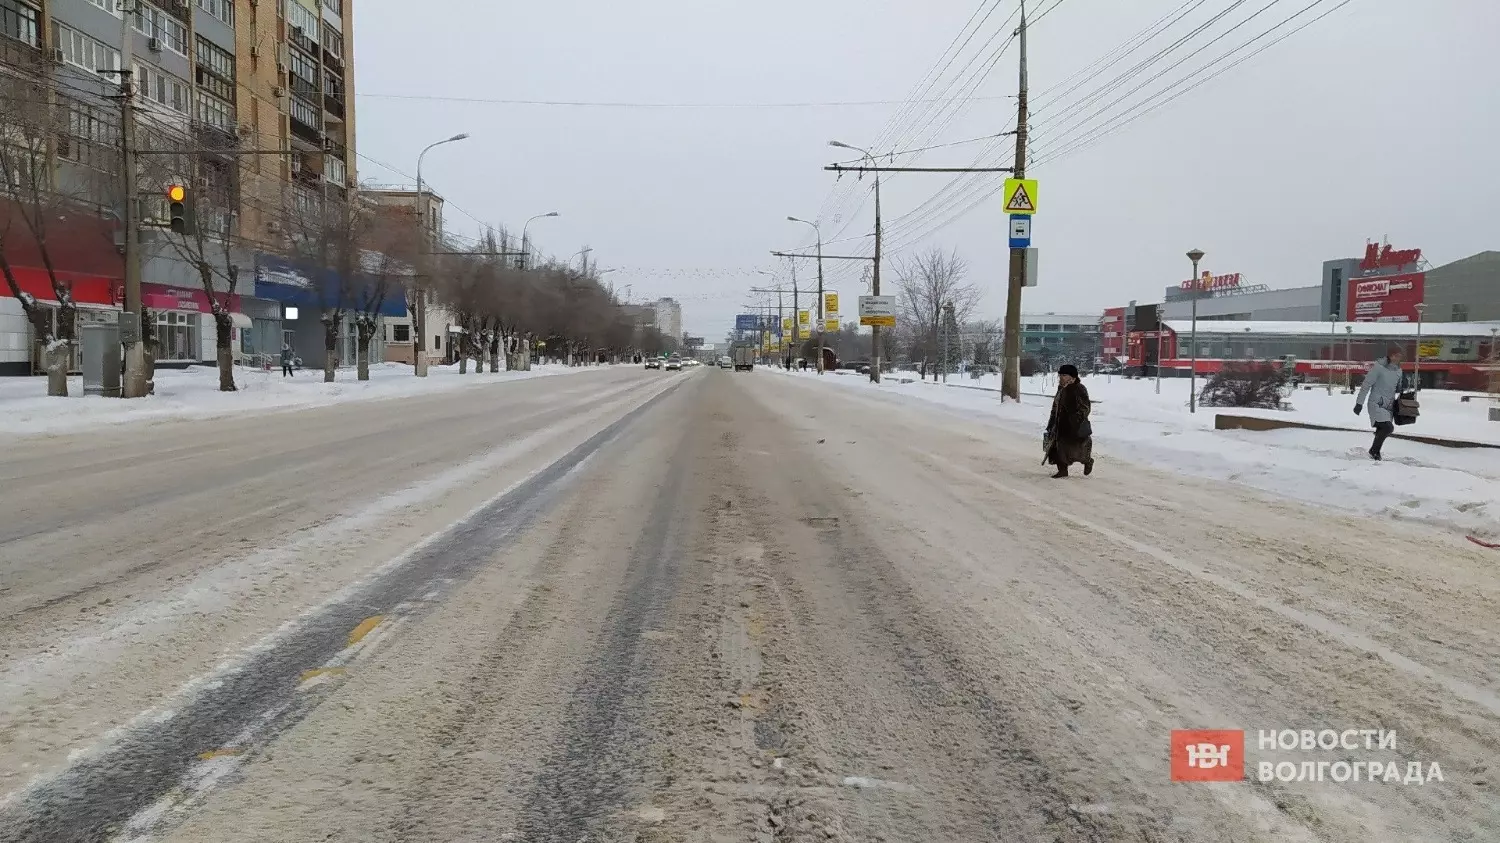 Проспект Ленина в Тракторозаводском районе однозначно чистили, хотя местами снег на дороге всё равно оставался